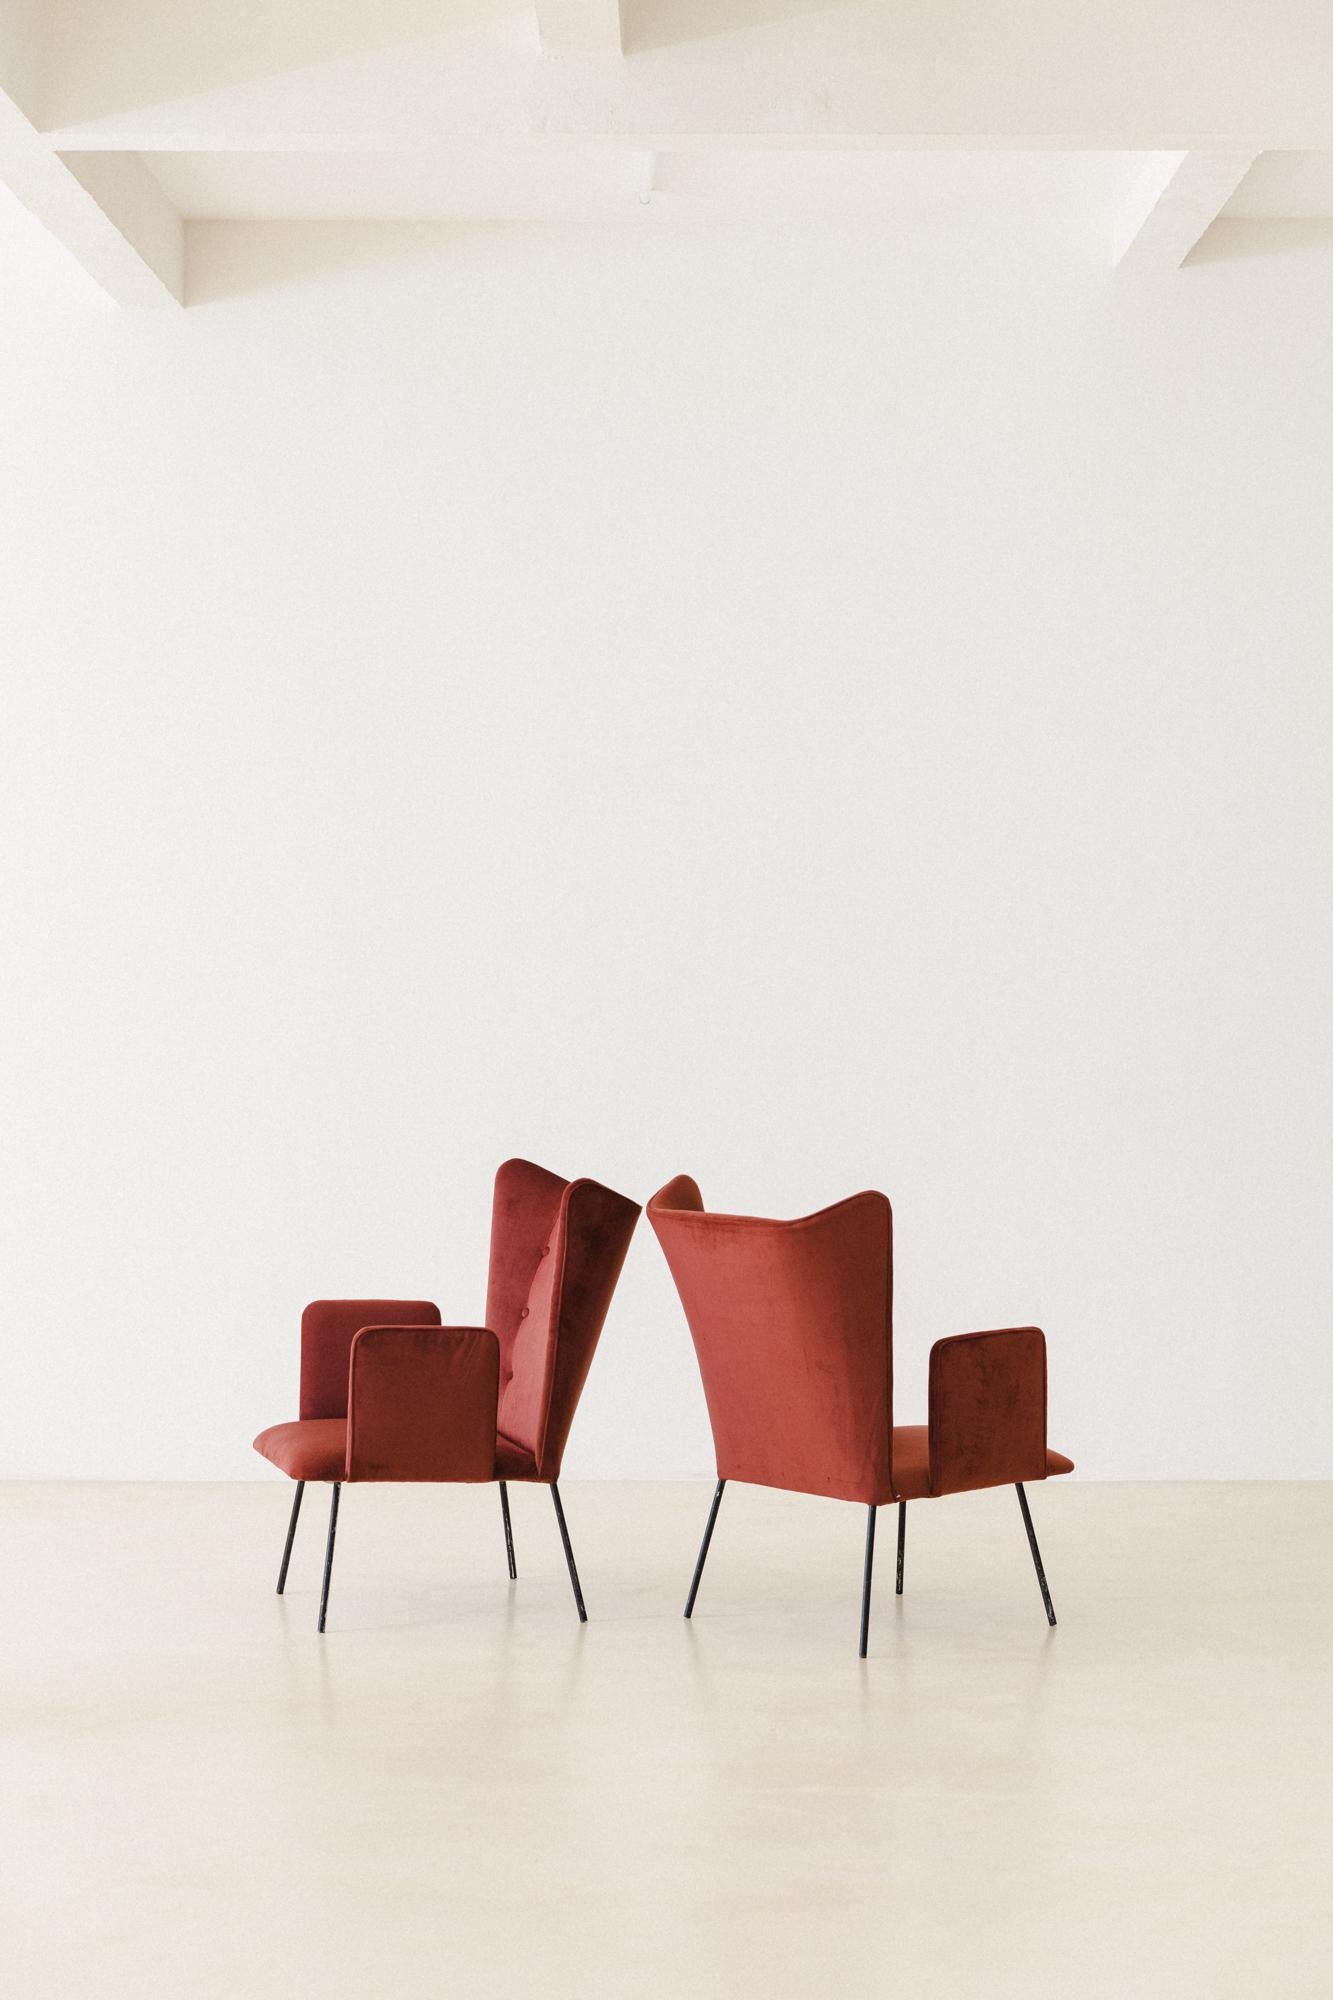 Ce superbe fauteuil a été produit par la société brésilienne Forma S.A. Móveis e Objetos de Arte dans les années 1950. La pièce est constituée d'une structure en fer et de sièges et dossiers rembourrés.

Ce modèle particulier se compose d'un siège